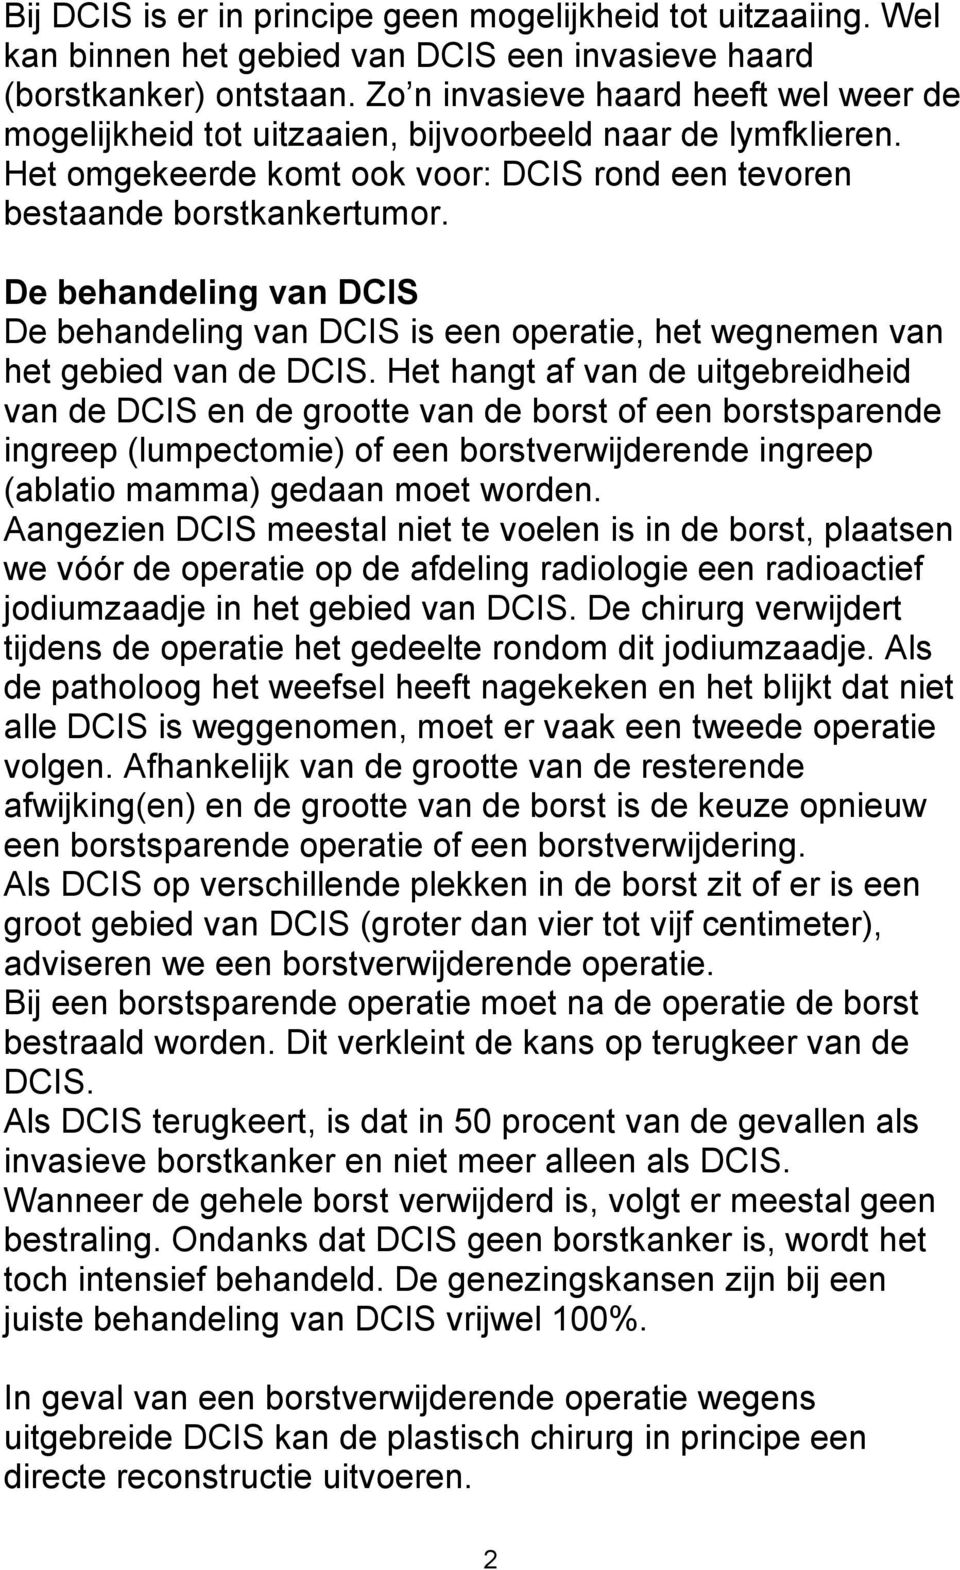 De behandeling van DCIS De behandeling van DCIS is een operatie, het wegnemen van het gebied van de DCIS.